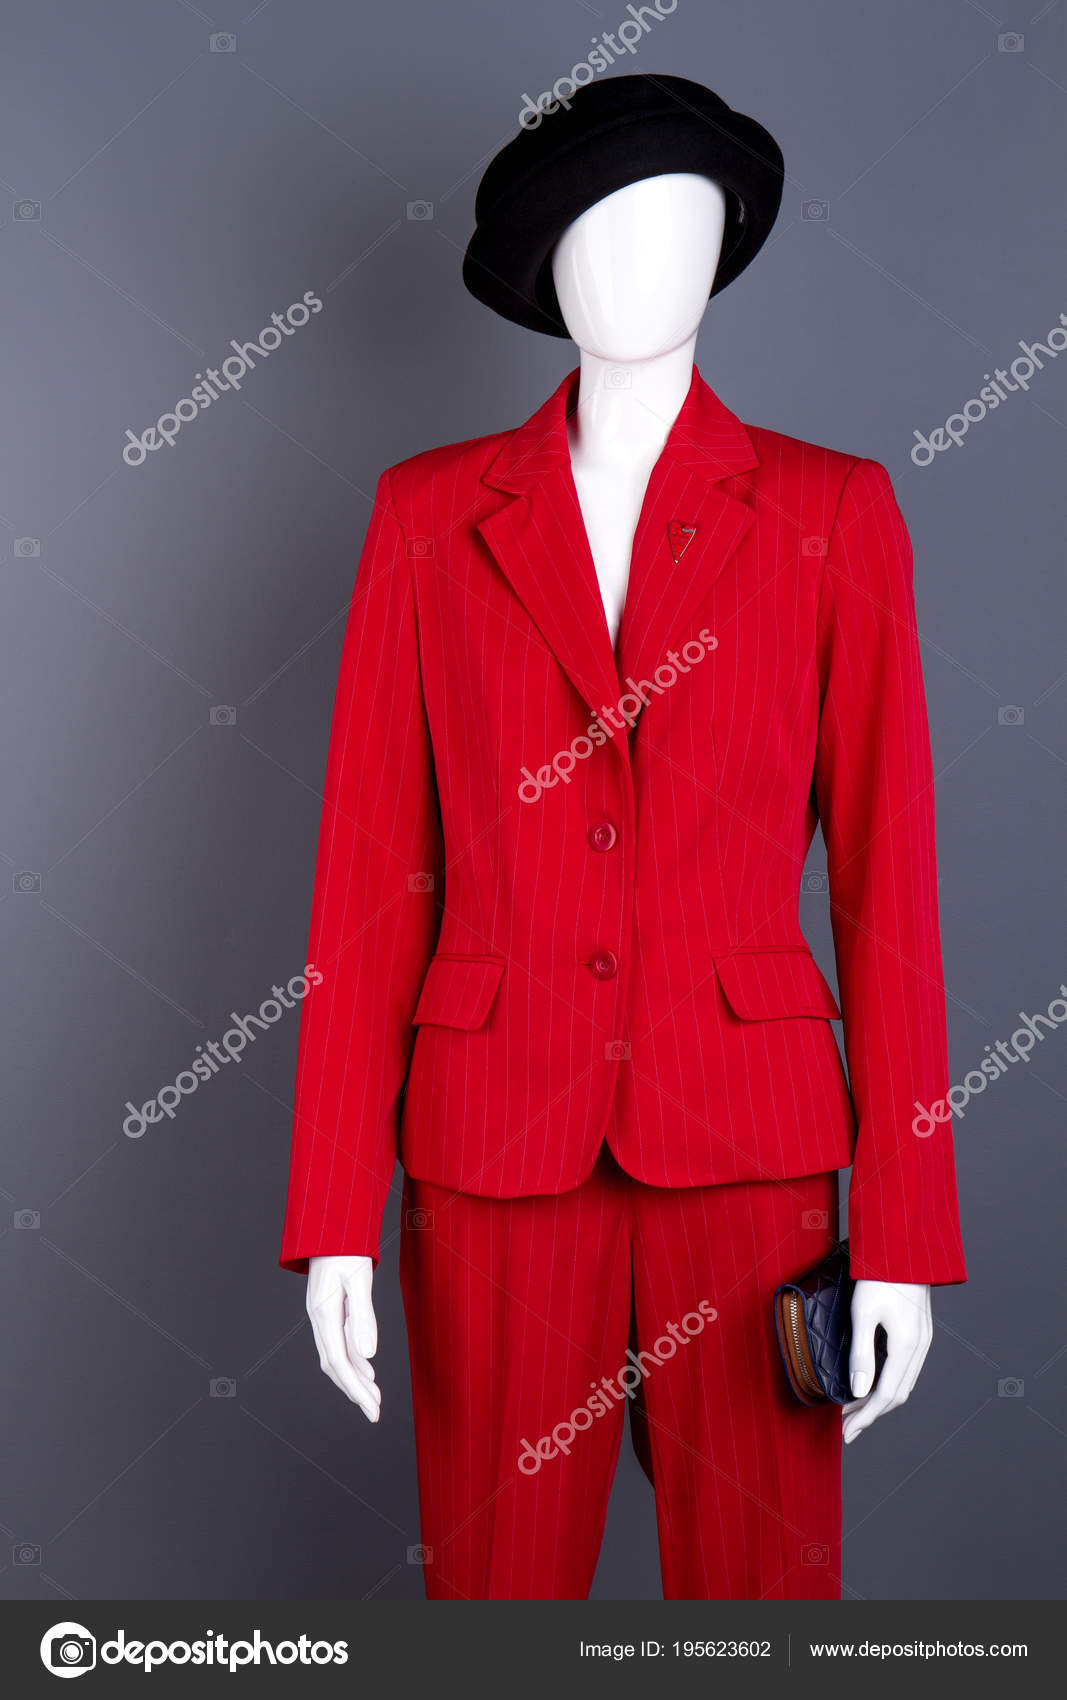 ladies red suit